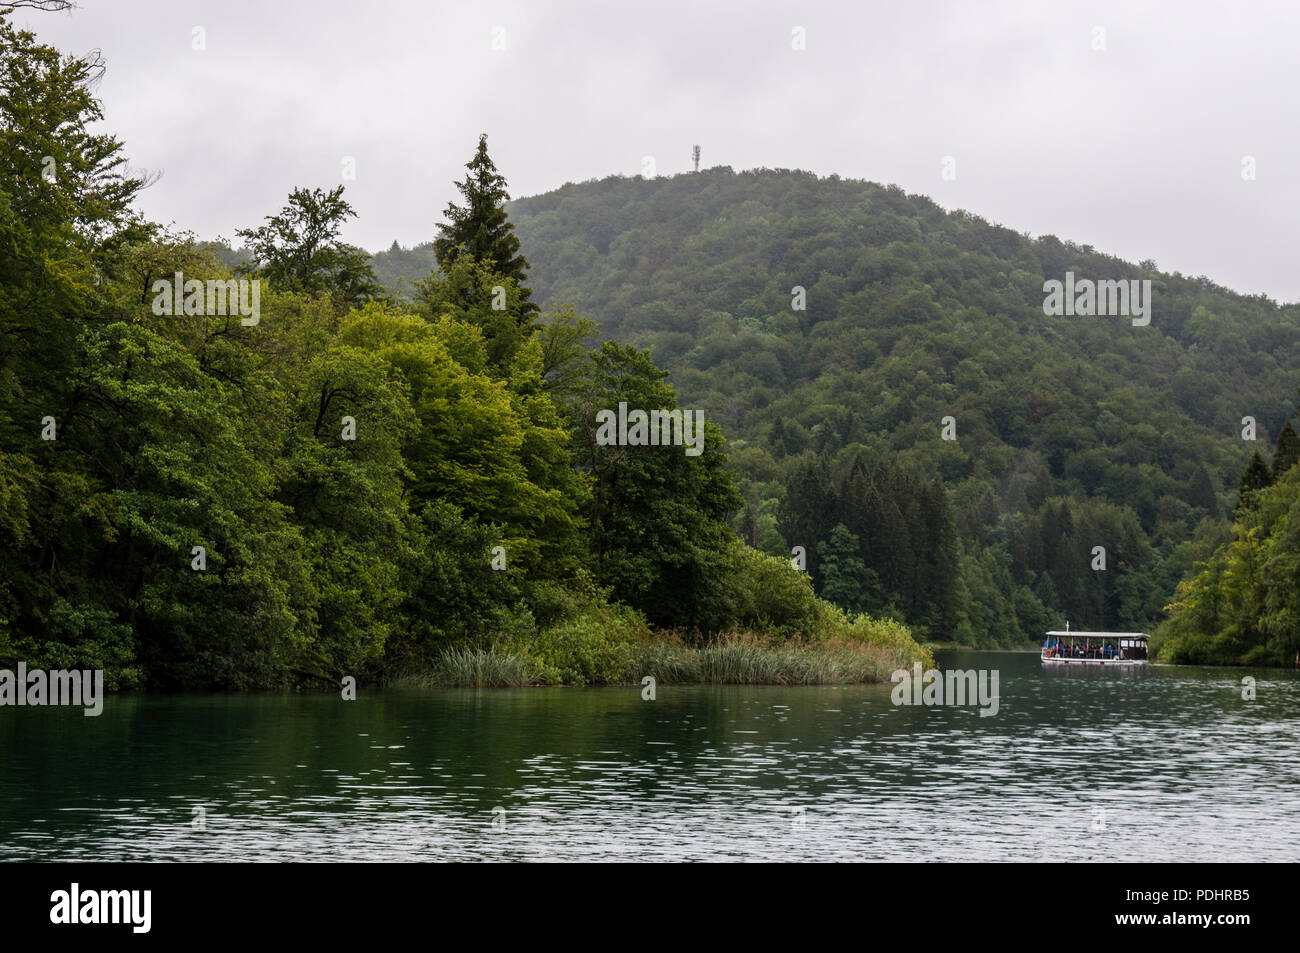 Croatie : croisière en bateau touristique sur le lac du parc national des Lacs de Plitvice, l'un des plus anciens parcs nationaux de l'État à la frontière de la Bosnie-Herzegovine Banque D'Images